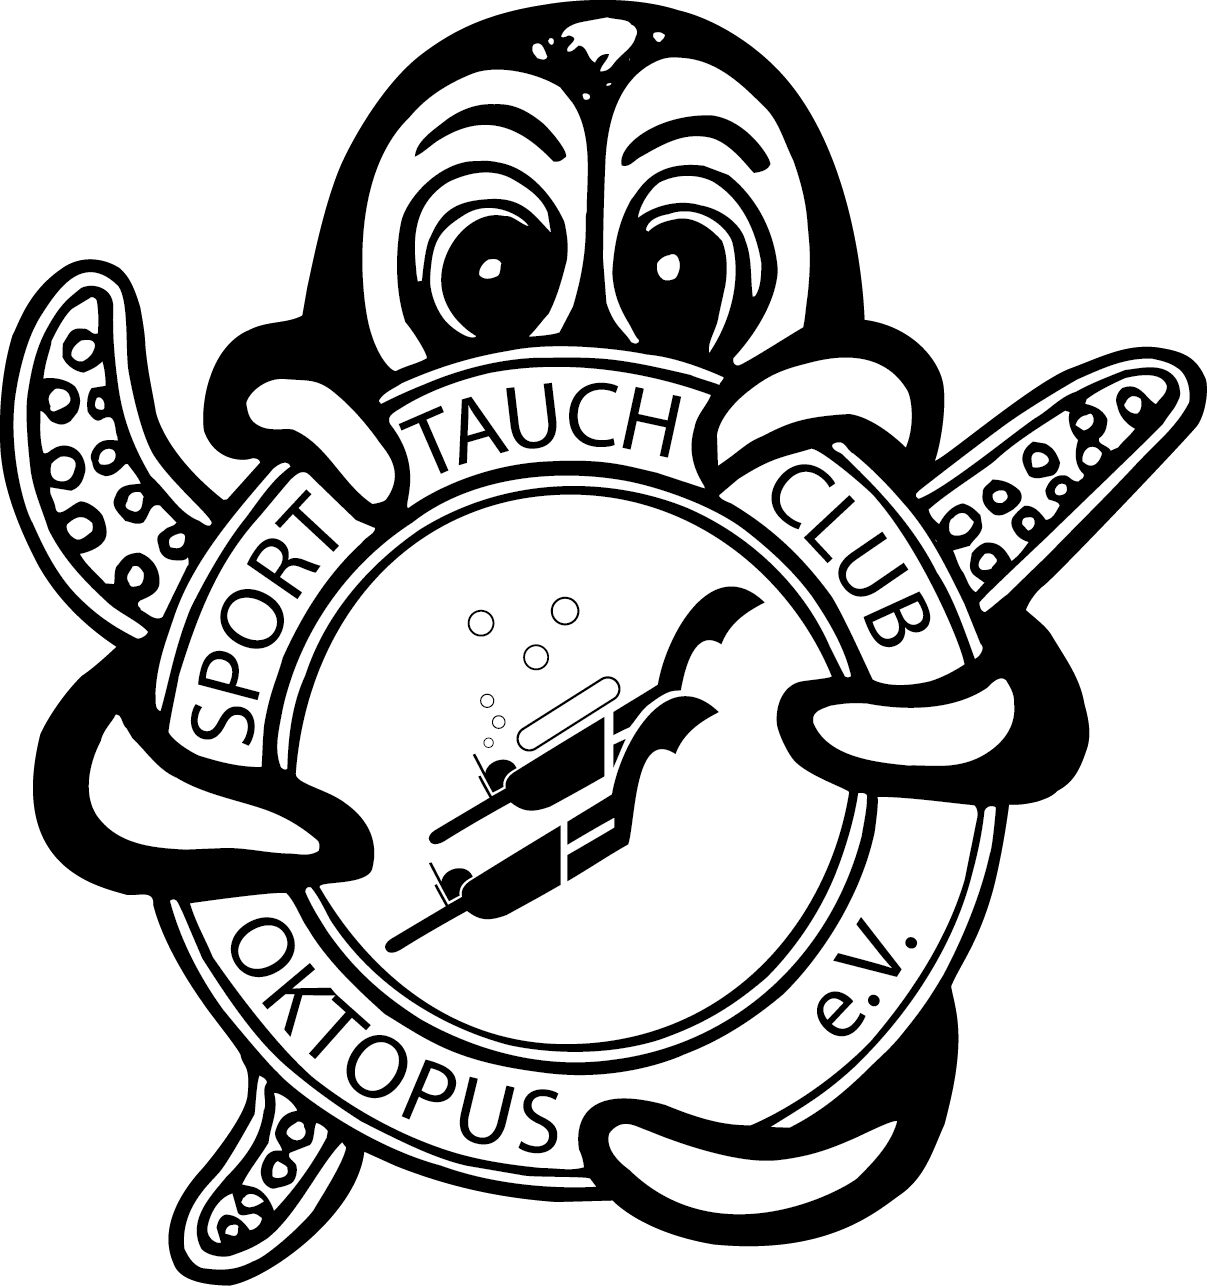 Sporttauchclub Oktopus e.V.